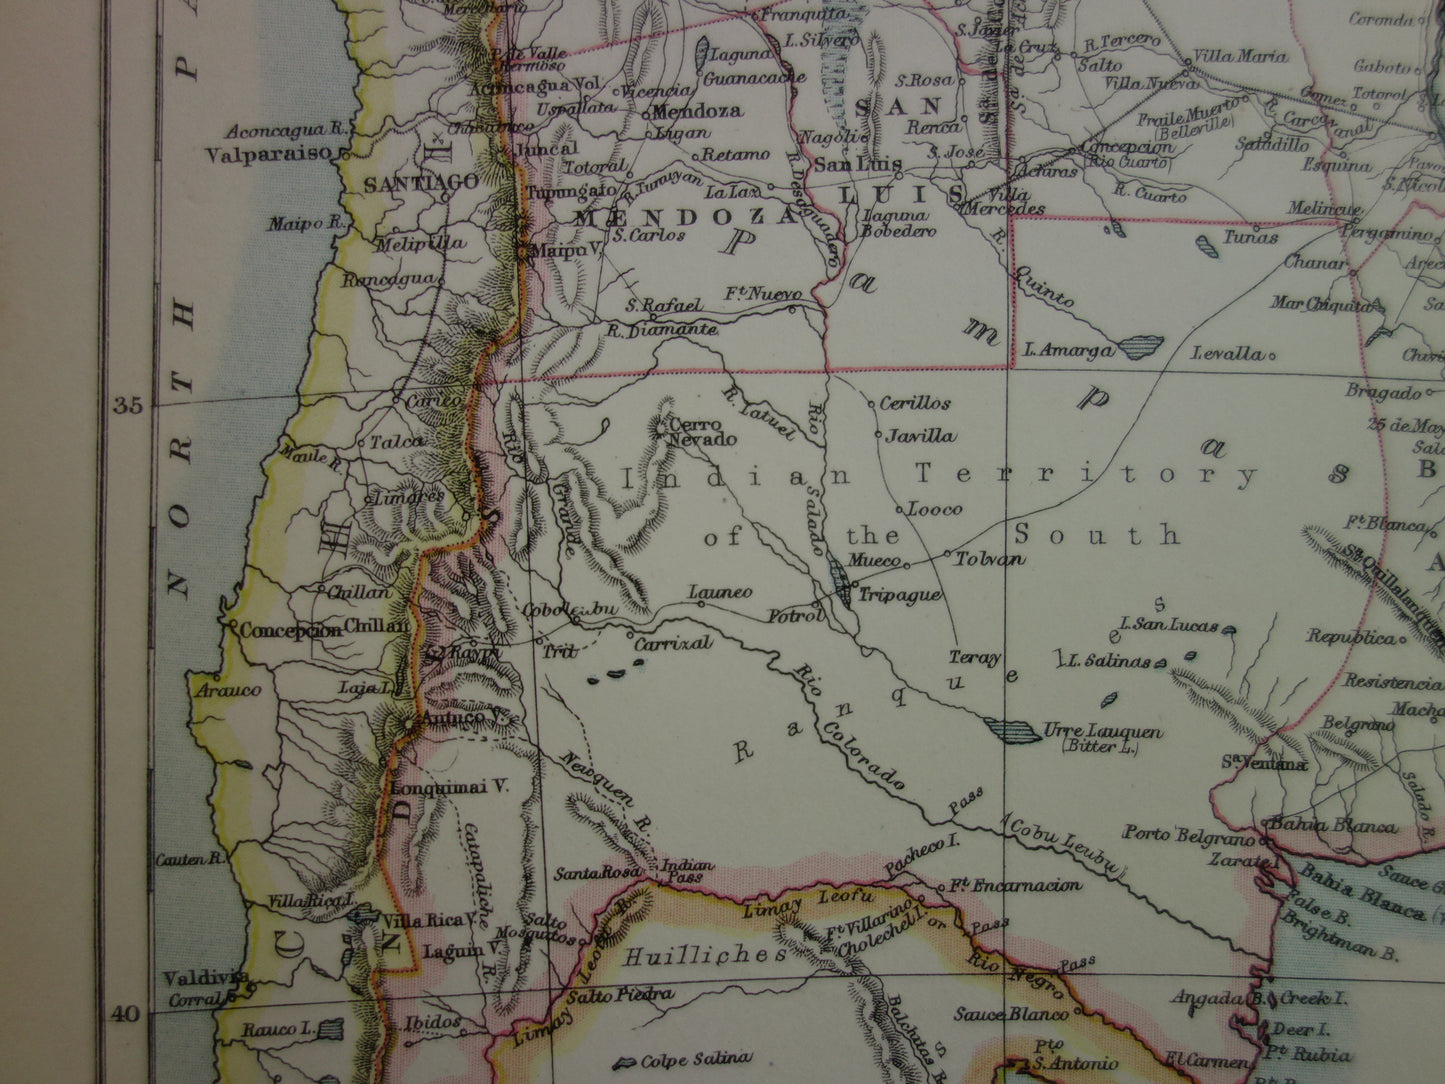 ARGENTINIE oude landkaart van Argentinië uit 1875 originele antieke Engelse kaart van de Argentijnse Republiek